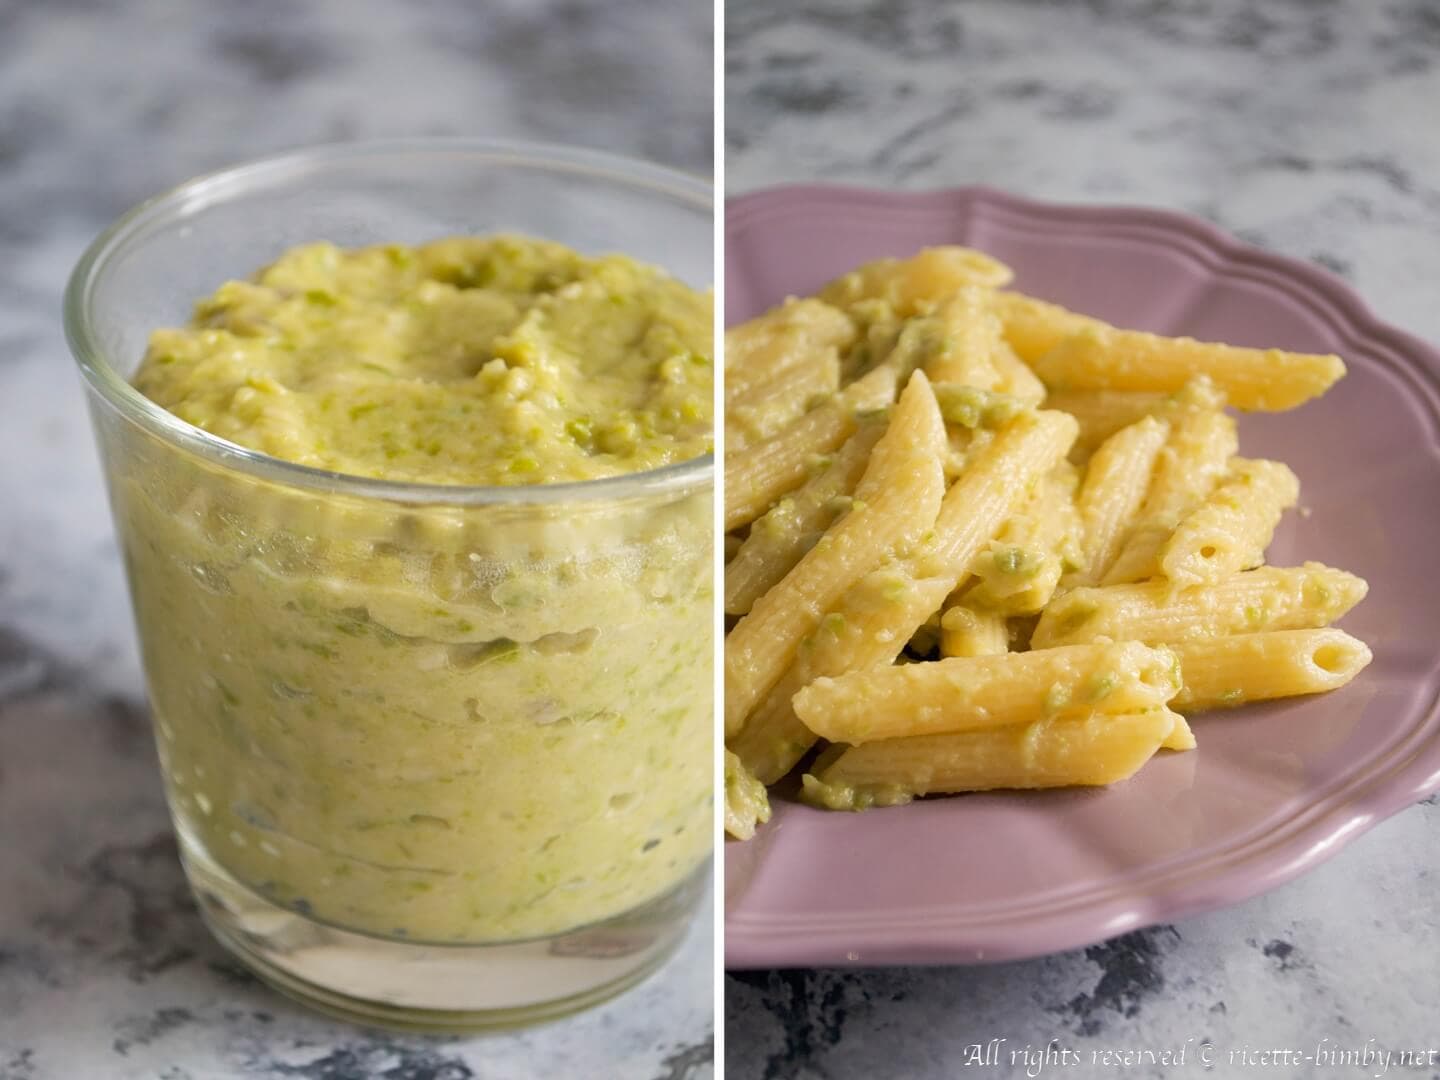 Pasta con crema di zucchine bimby ricette bimby for Ricette veloci pasta